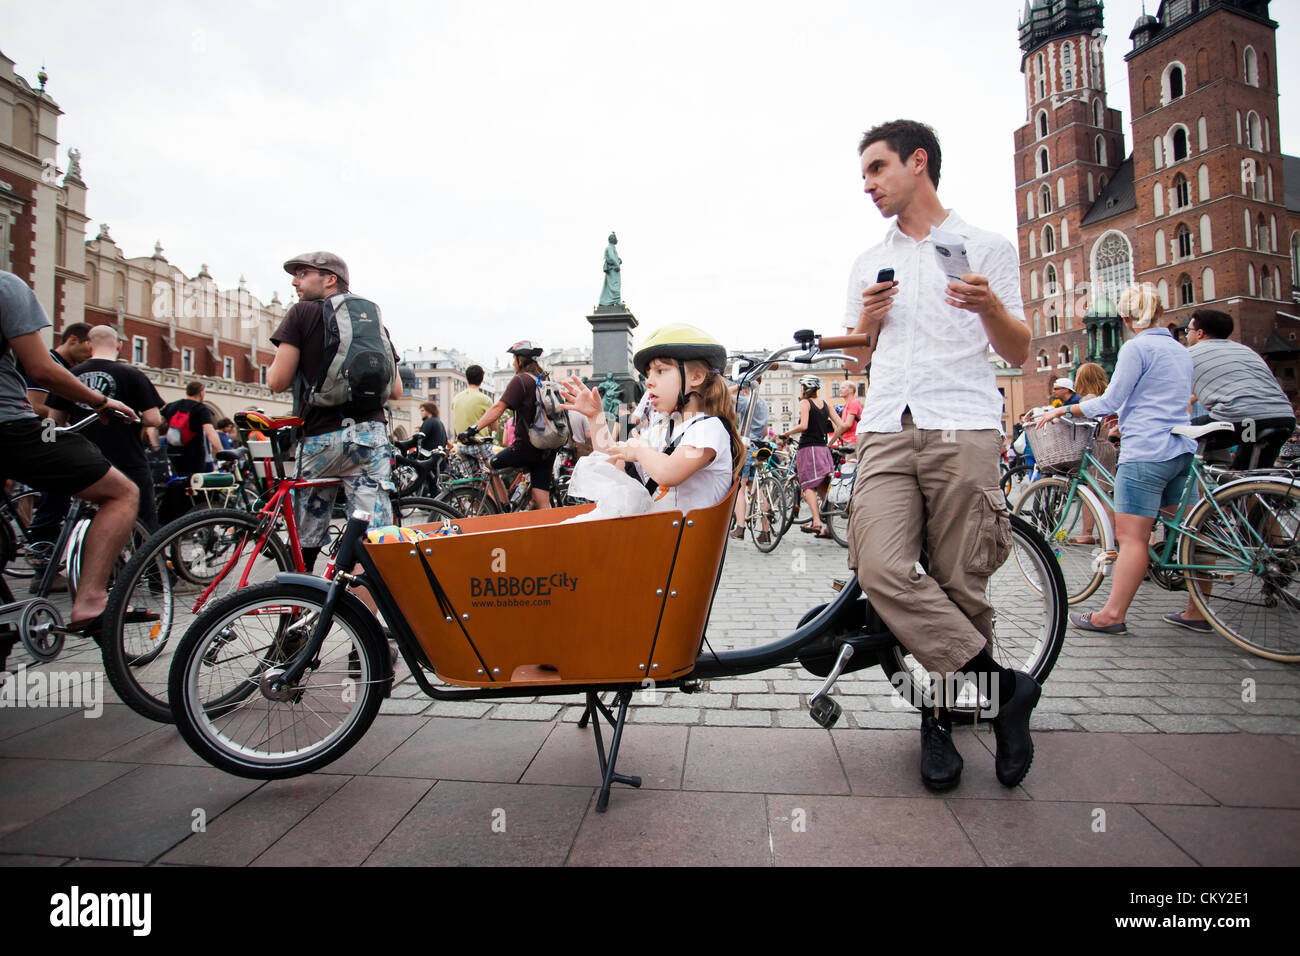 31 de agosto de 2012 en Cracovia (pol. Cracovia, Polonia - masa crítica, un ciclista que se celebra el último viernes de cada mes. Este es un tipo de protesta para crear conciencia acerca de temas de ciclismo. Foto de stock